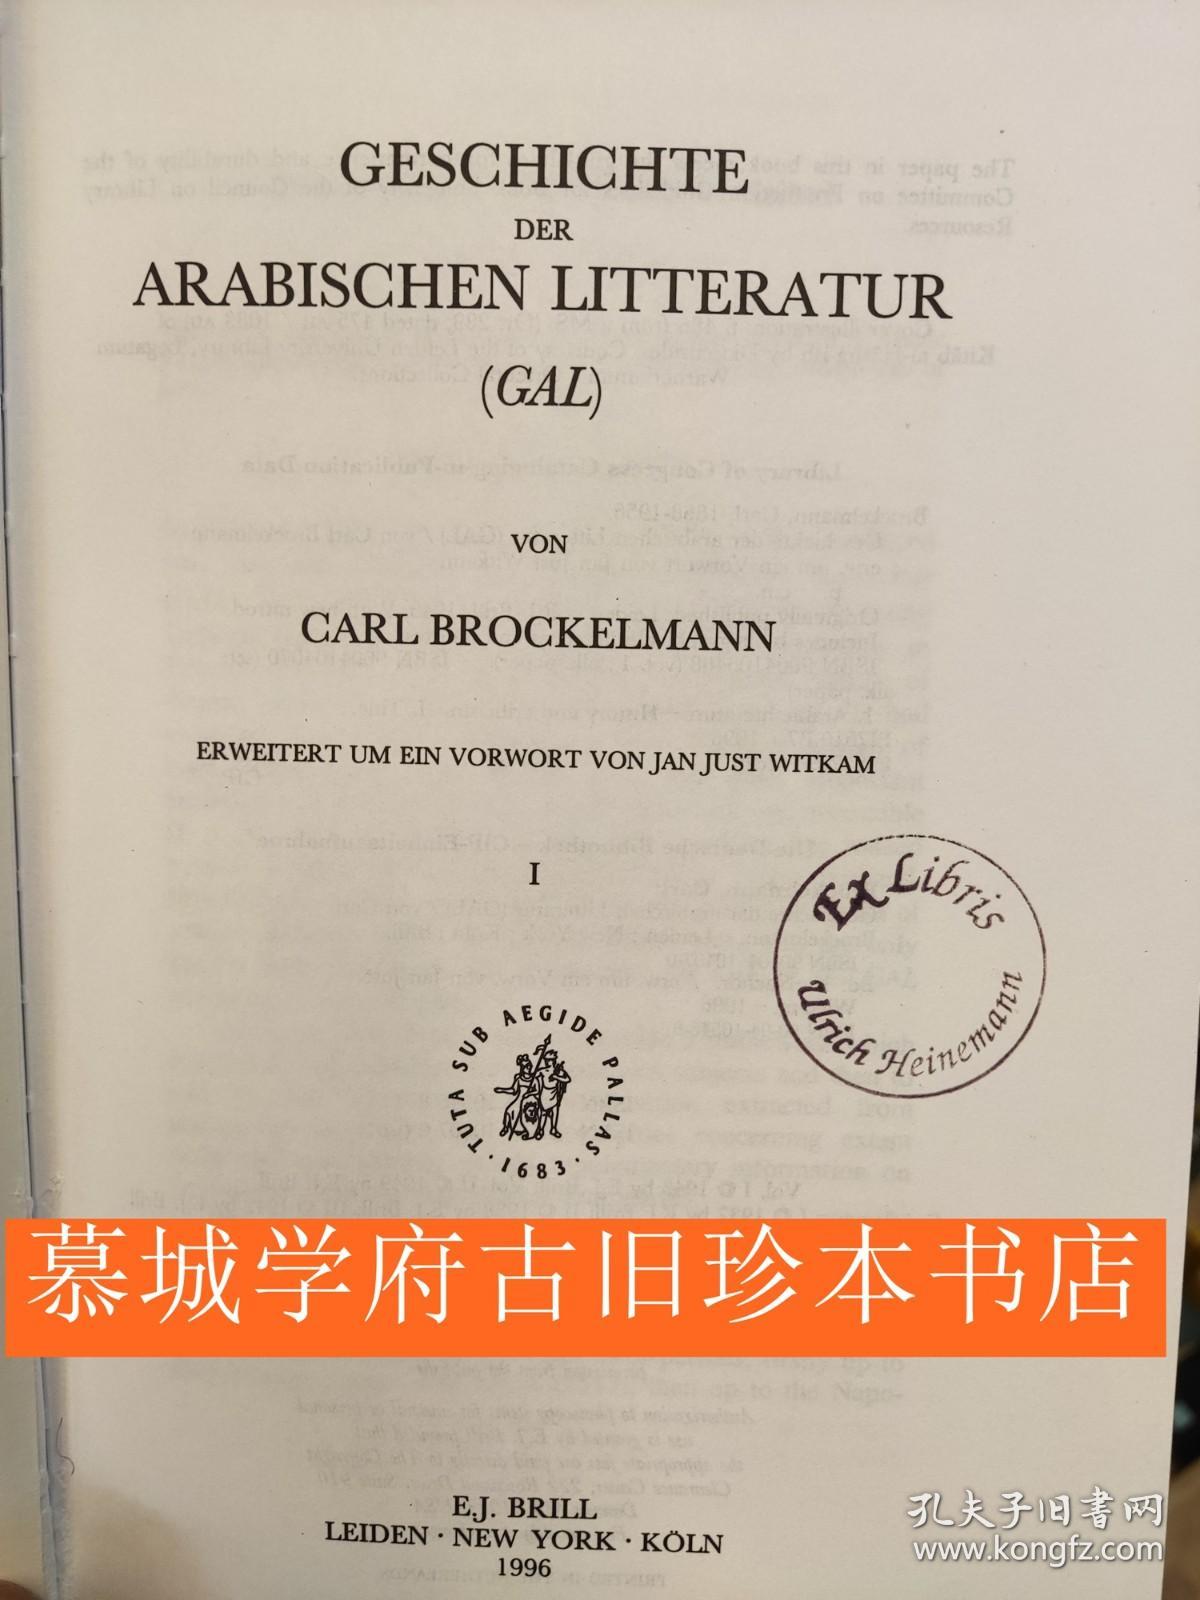 【经典巨作】《阿拉伯文学史》5册 CARL BROCKELMANN: GESCHICHTE DER ARABISCHEN LITERATUR